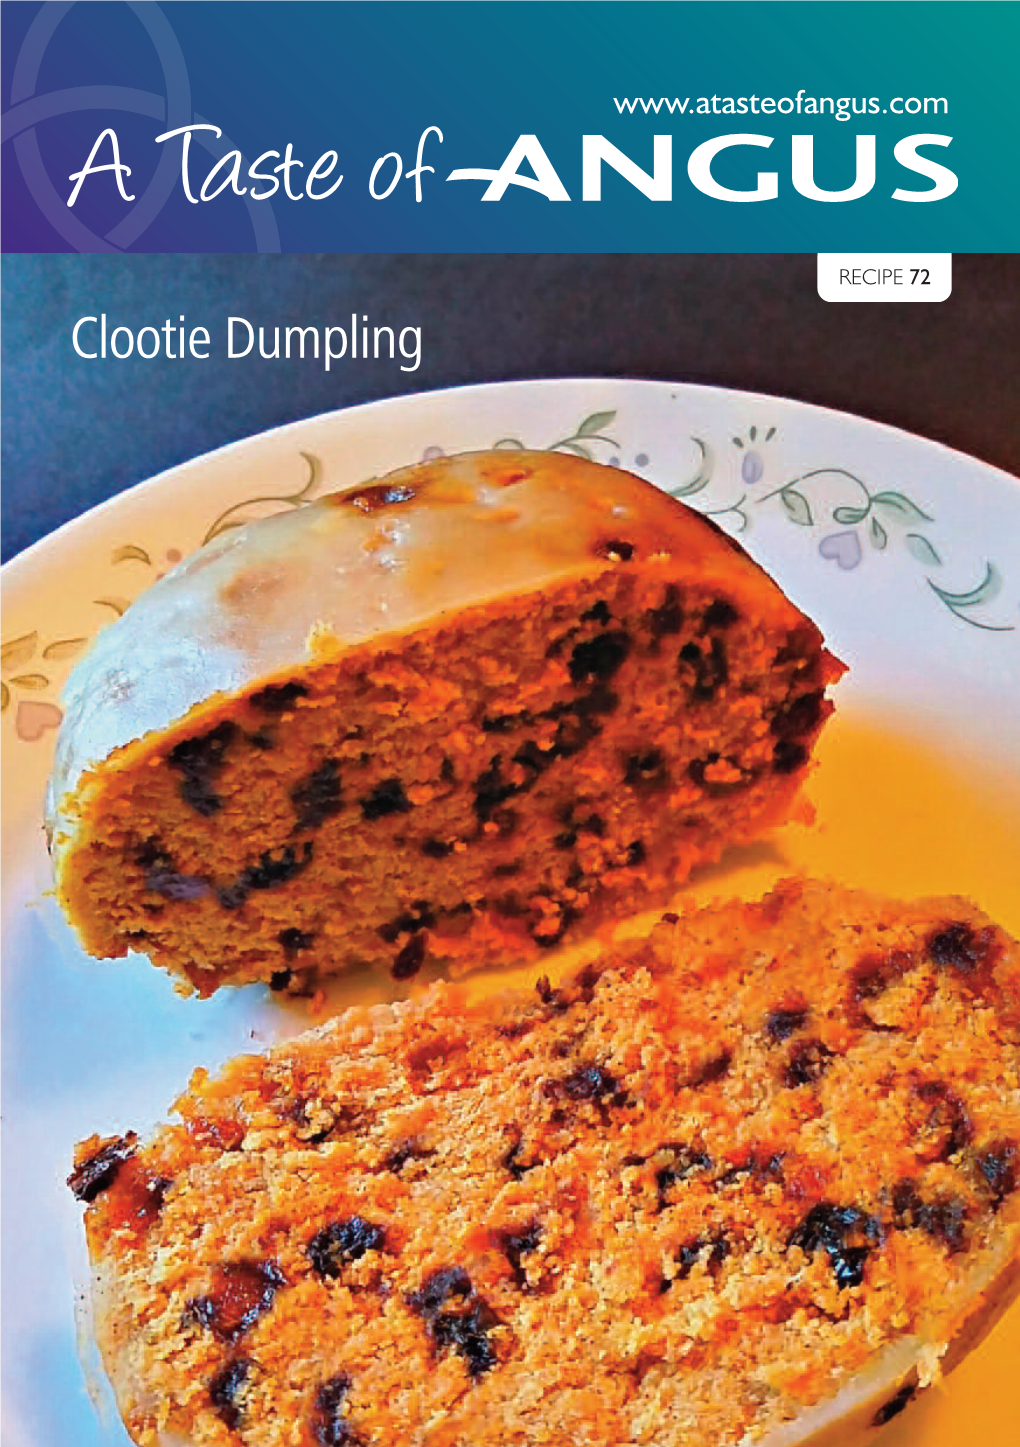 Clootie Dumpling